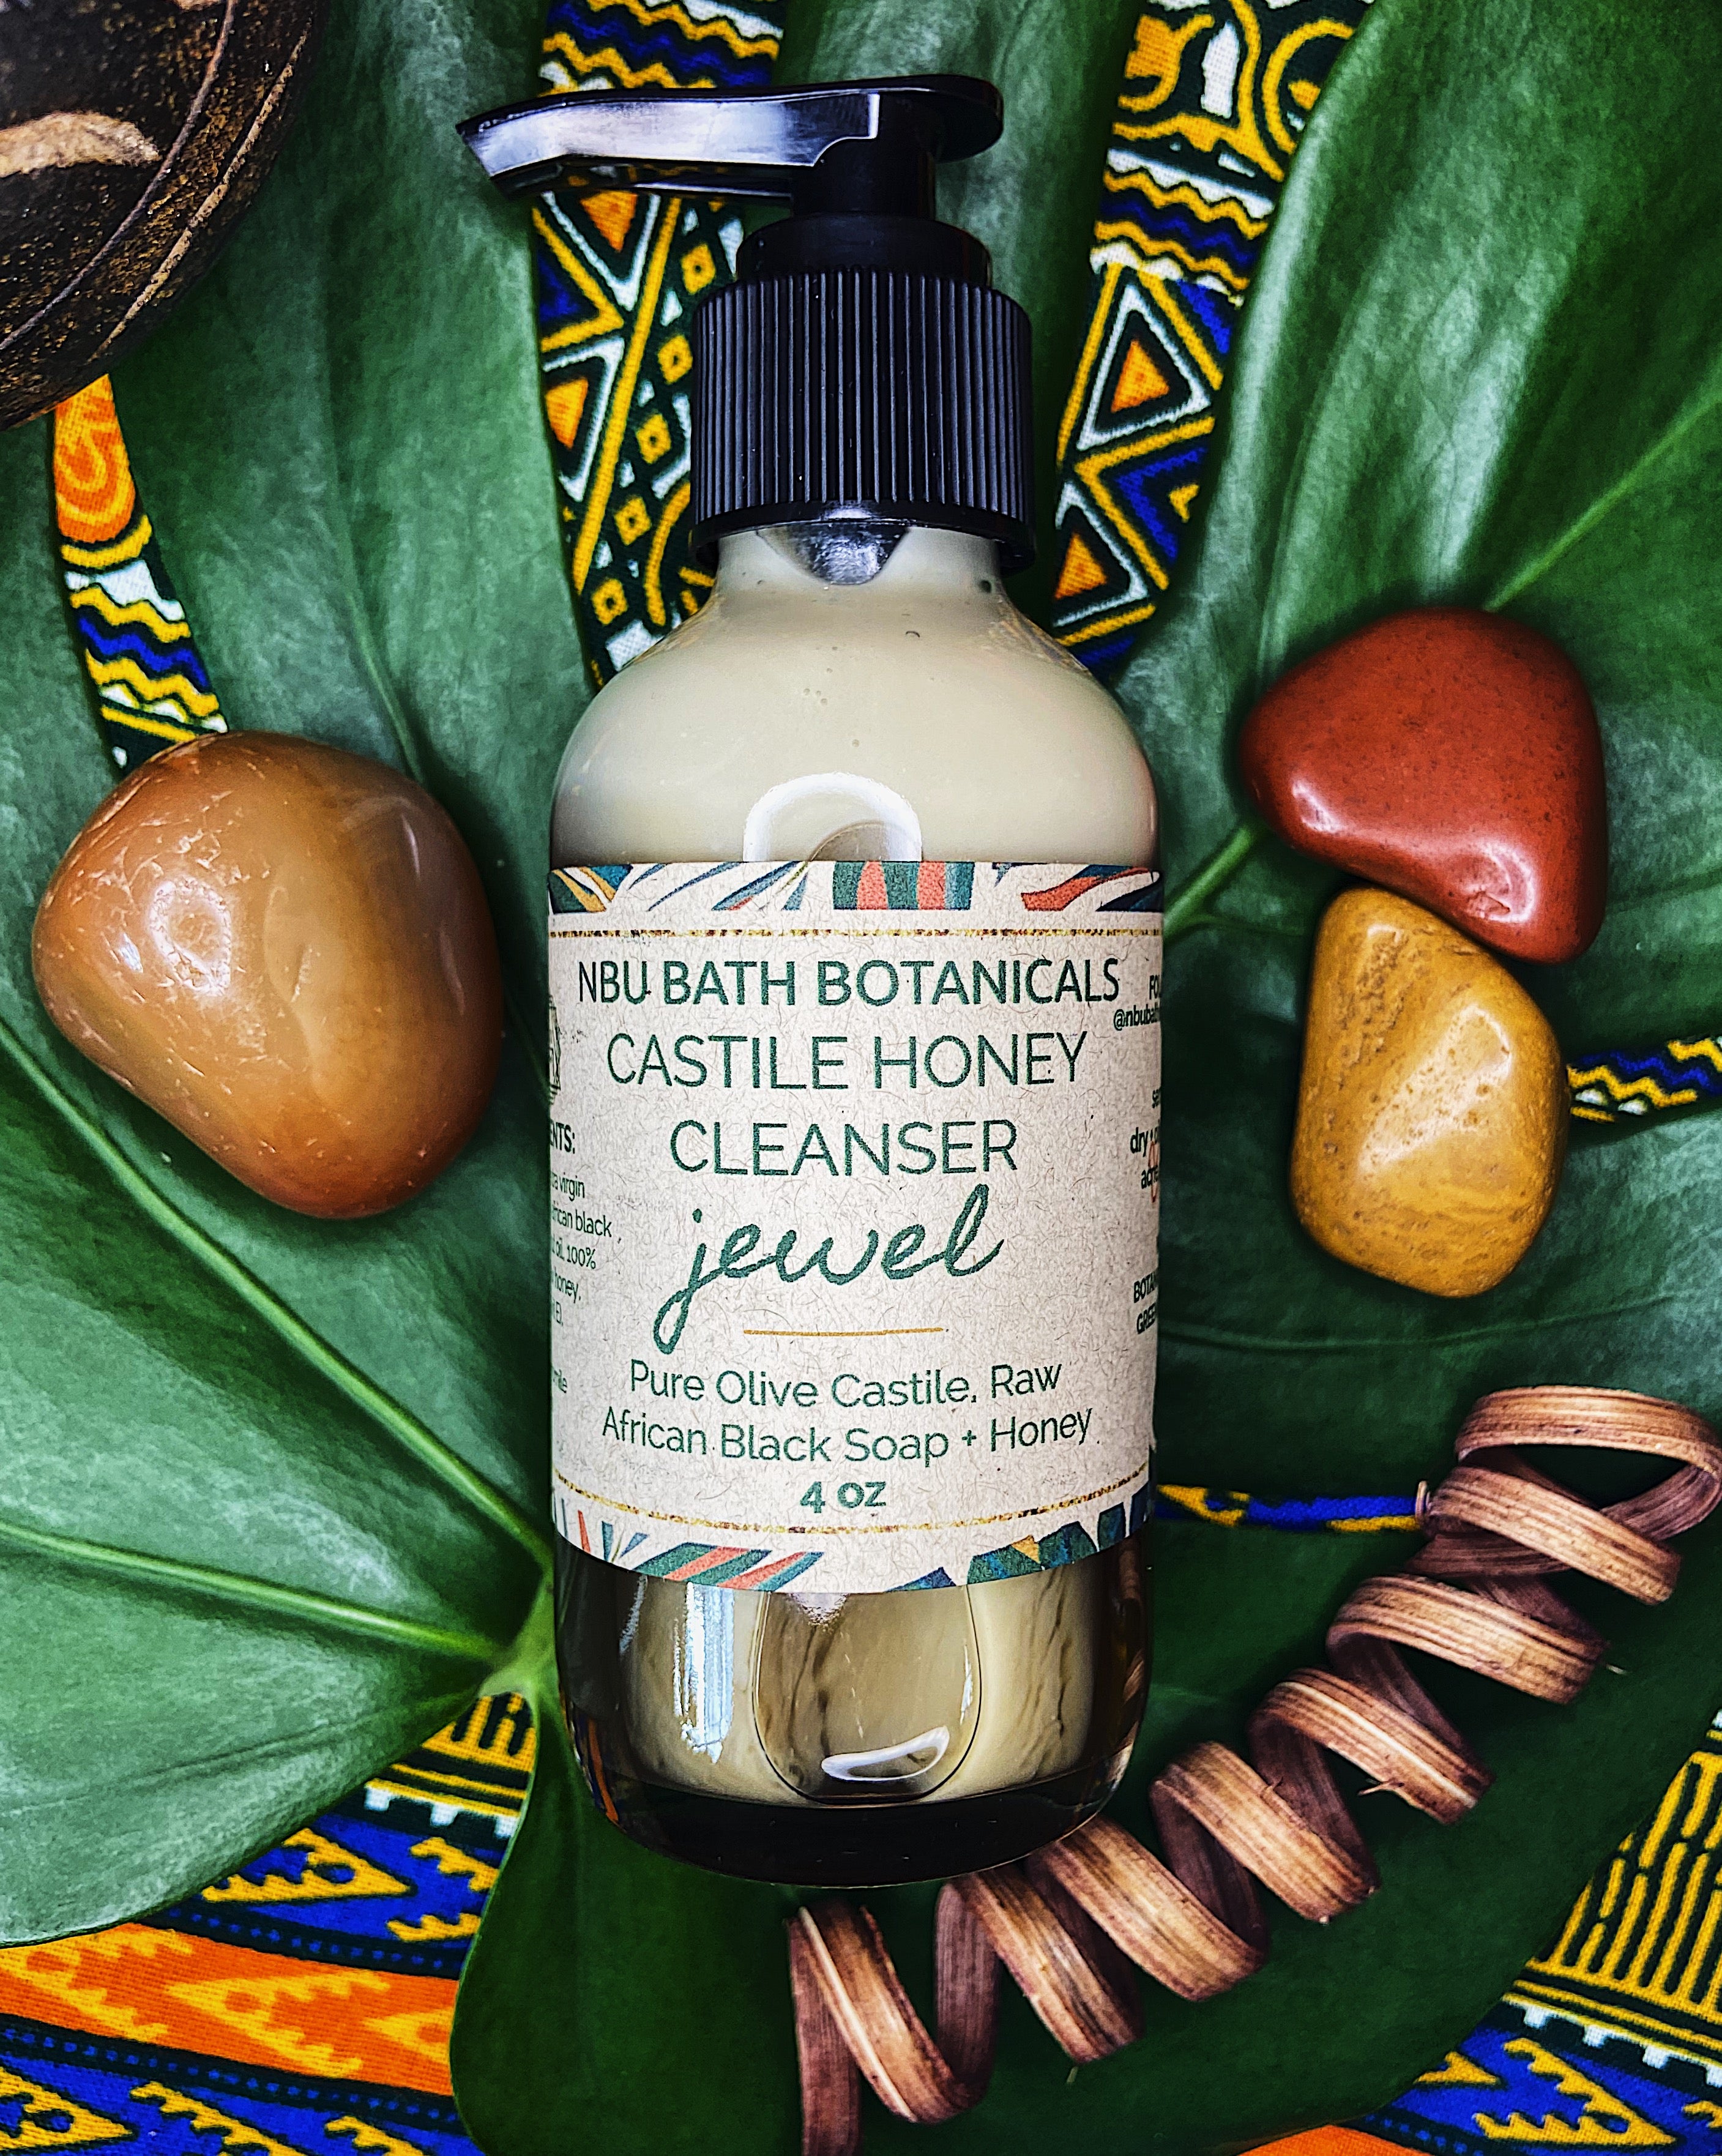 Castile Honey Cleanser • JEWEL